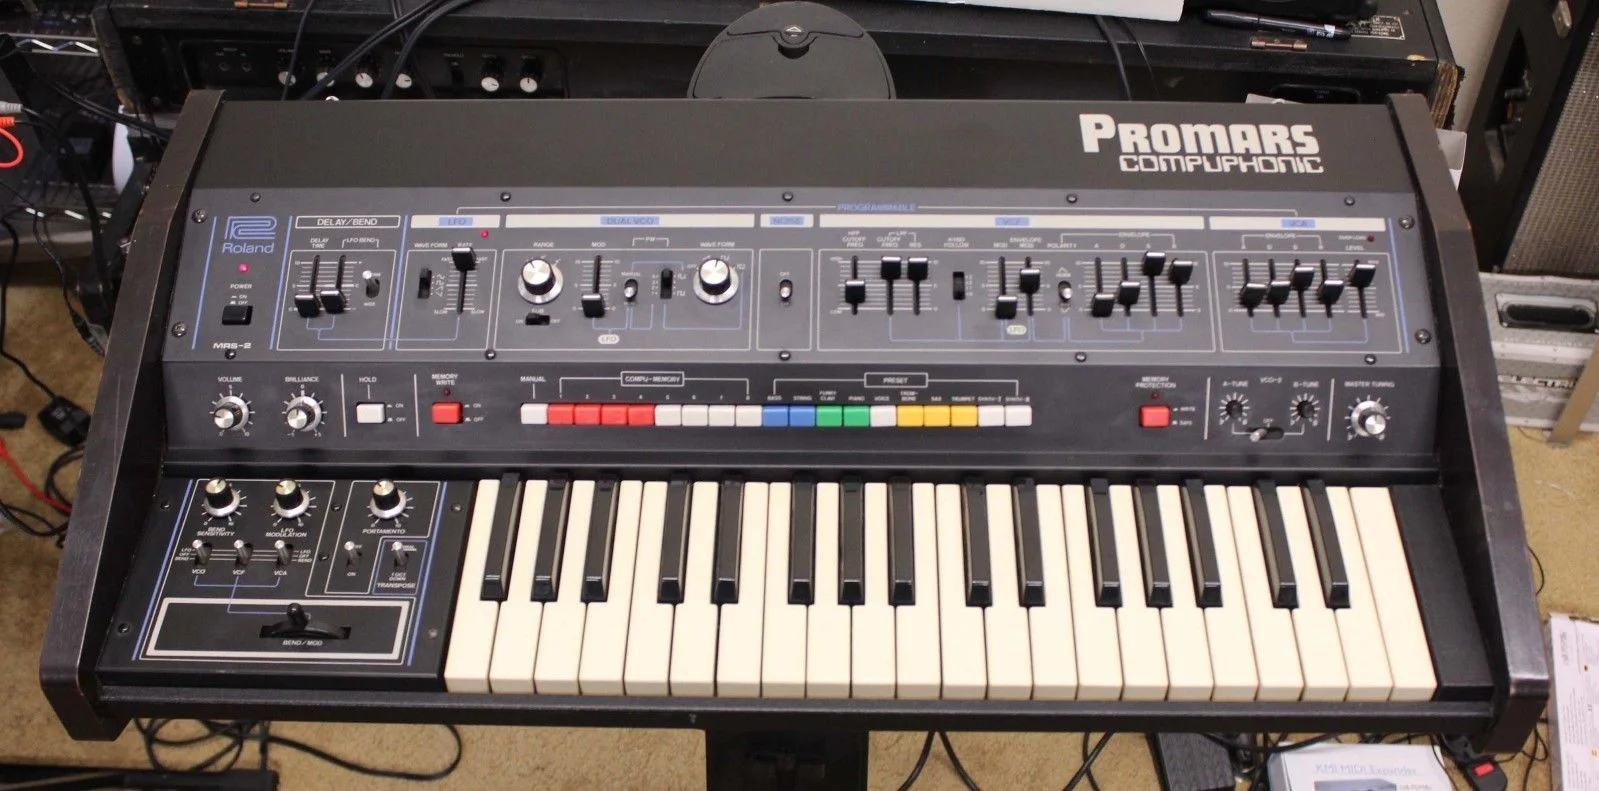 Вышедший в 1979 году аналоговый синтезатор Roland Promars Compuphonic перевернул мир электронной музыки. Новинка имела встроенный процессор Intel 8048 и выдавала кучу невероятных звуков, а дополнительные модули в разы расширяли его возможности.